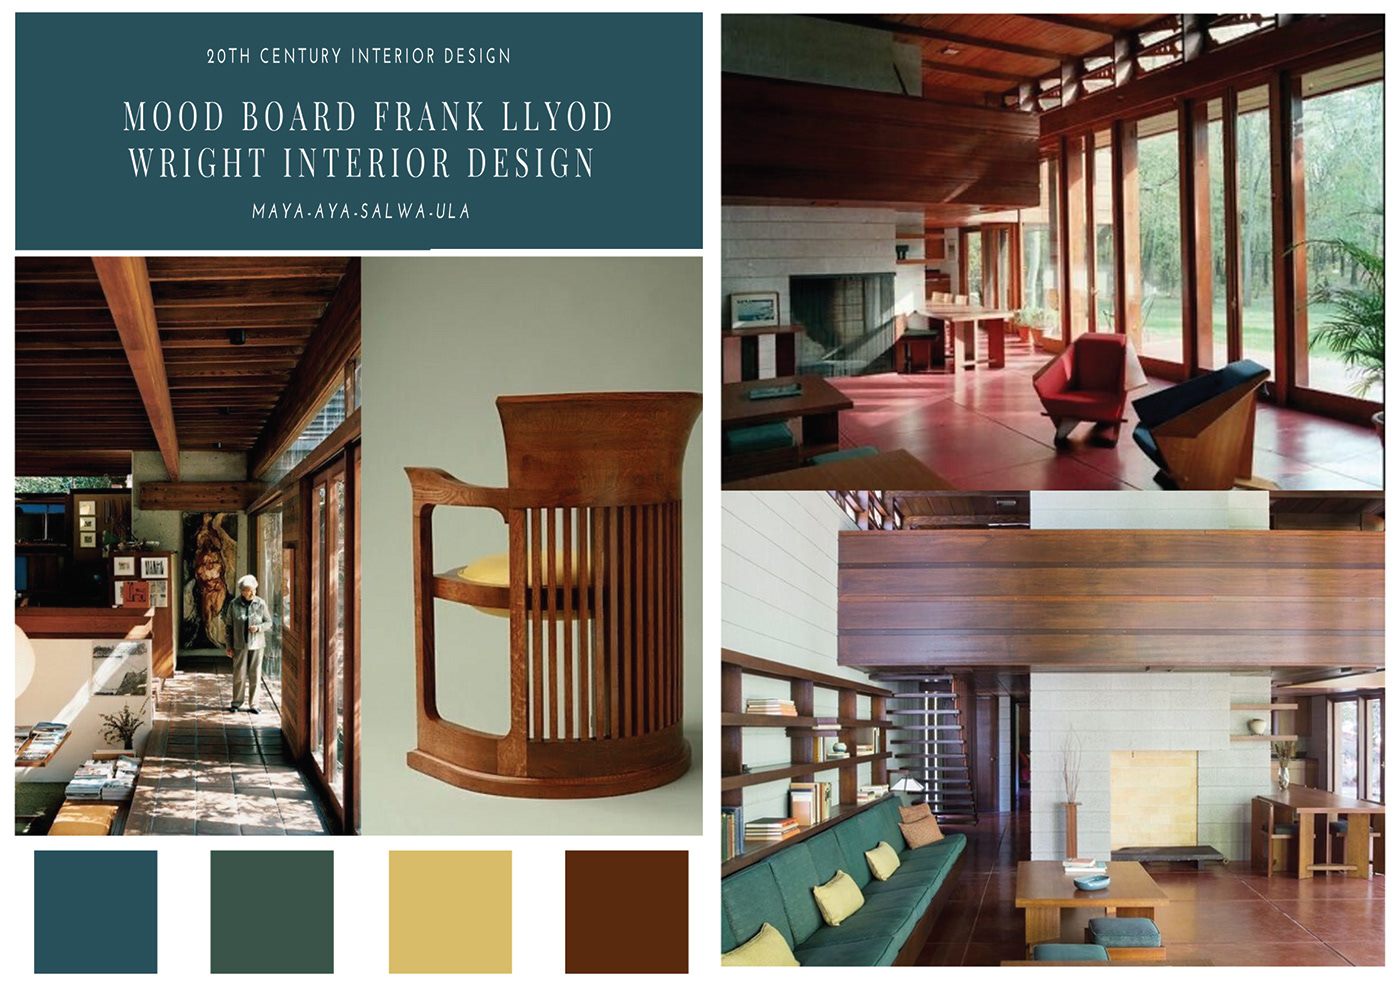 furniture design FLW interior design 